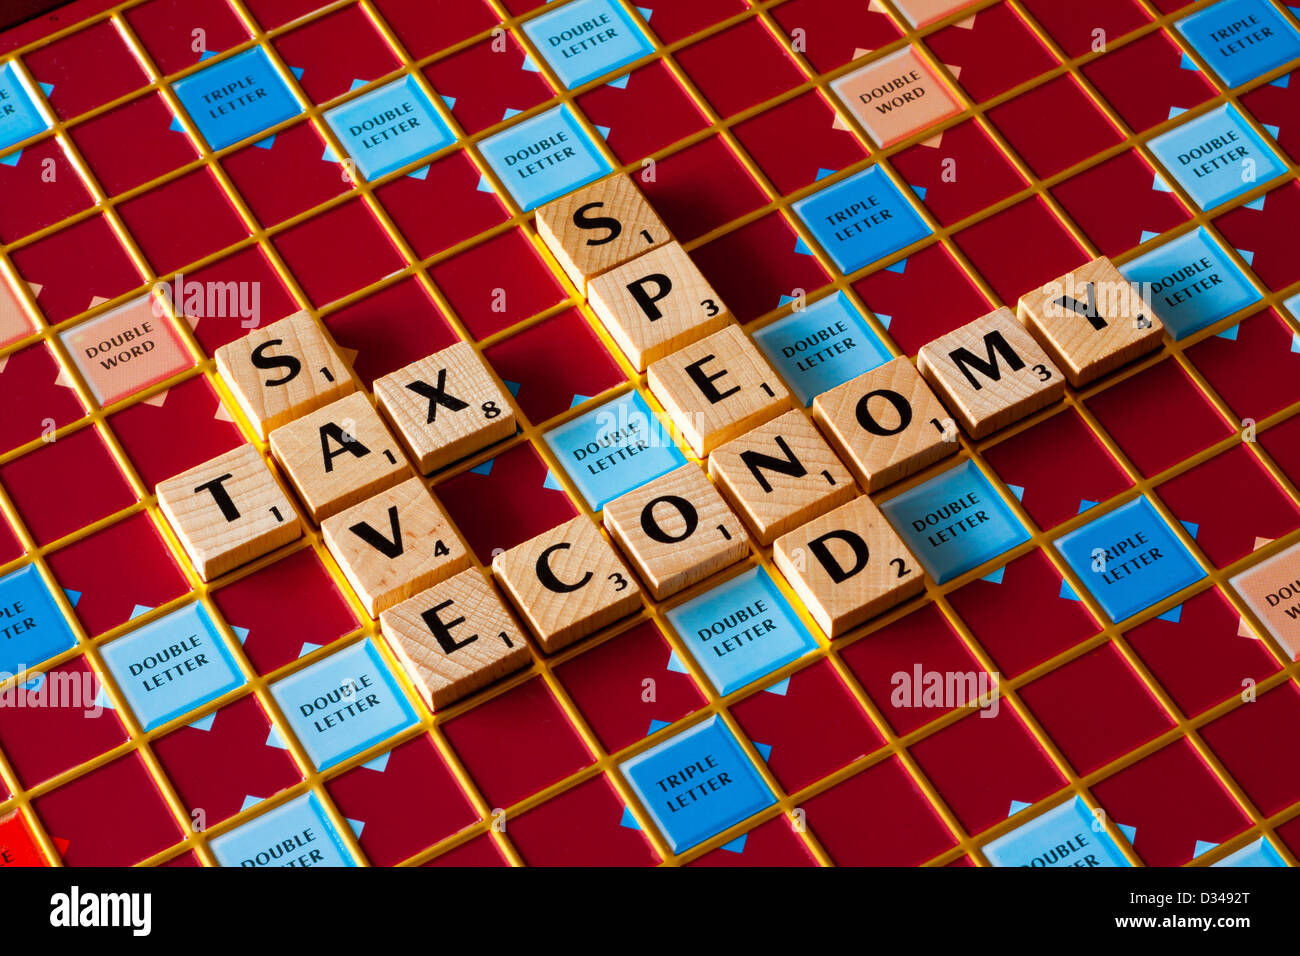 Scrabble-Brett Rechtschreibung sparen Steuer verbringen Wirtschaft Worte für das Budget und den Zustand der Wirtschaft und Finanzen Stockfoto